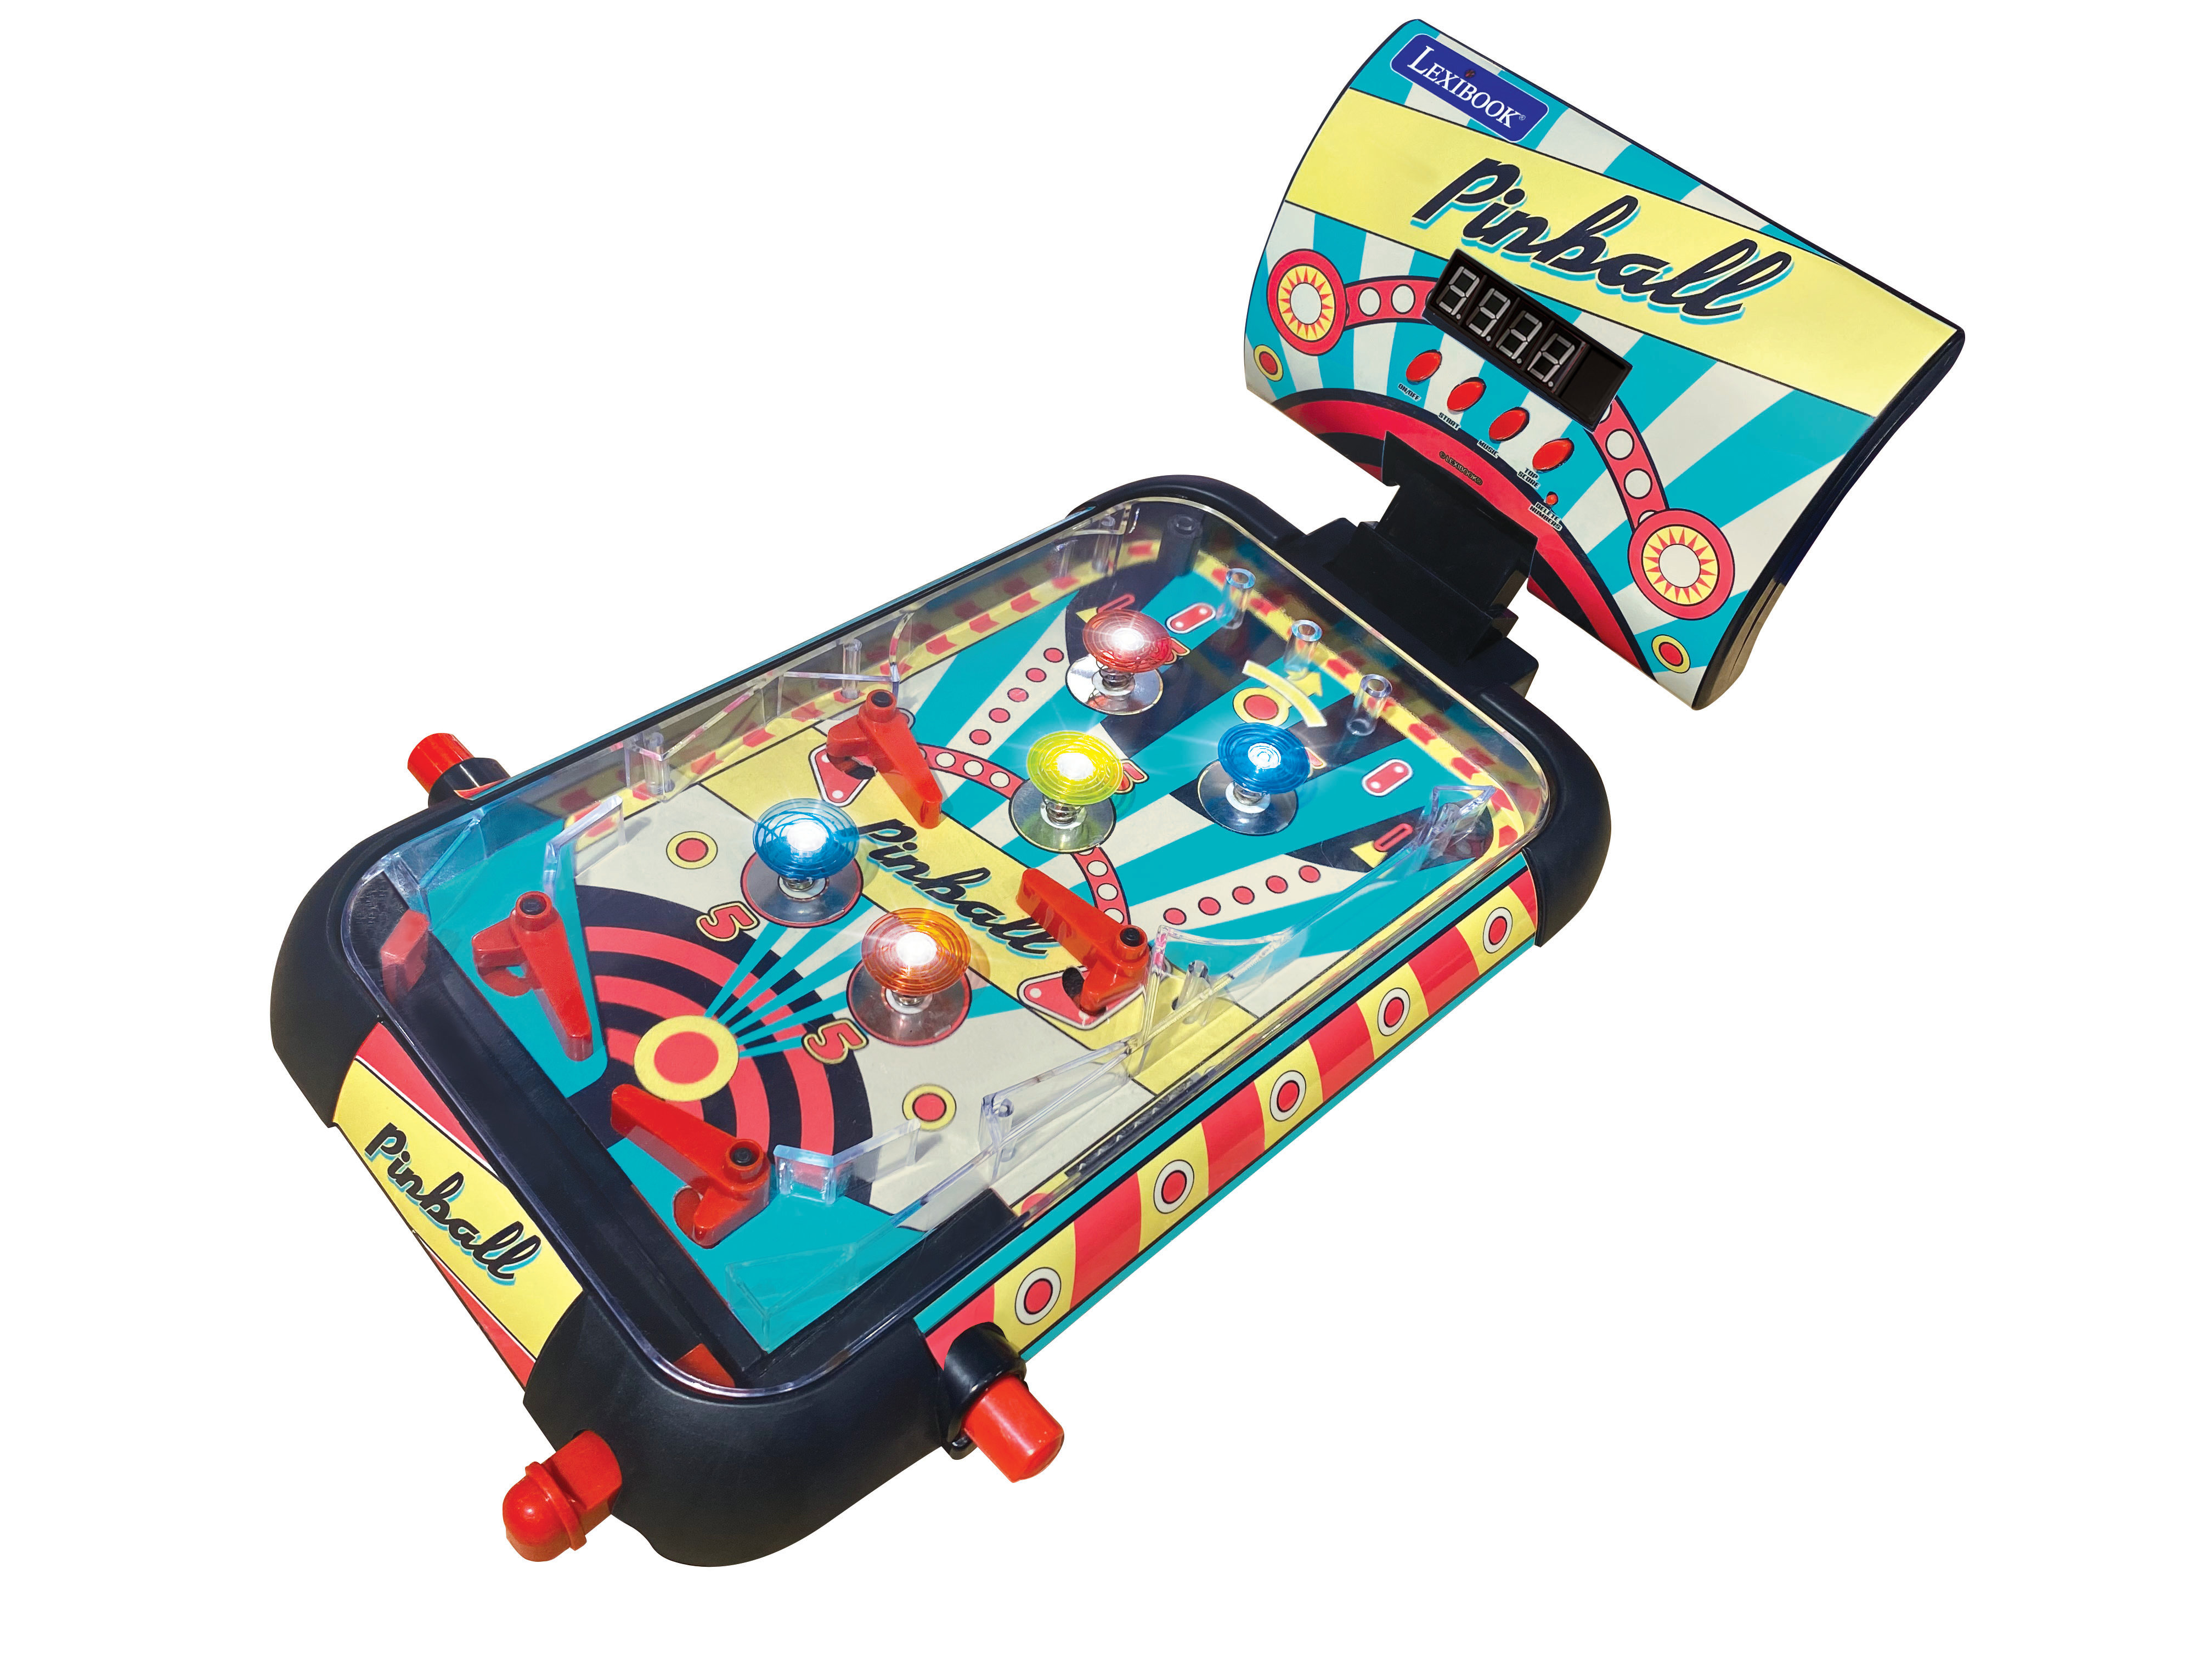 DISNEY'S LLILO & STITCH ELECTRONIC PINBALL MACHINE GAME BATTERY OPERATED  Toys